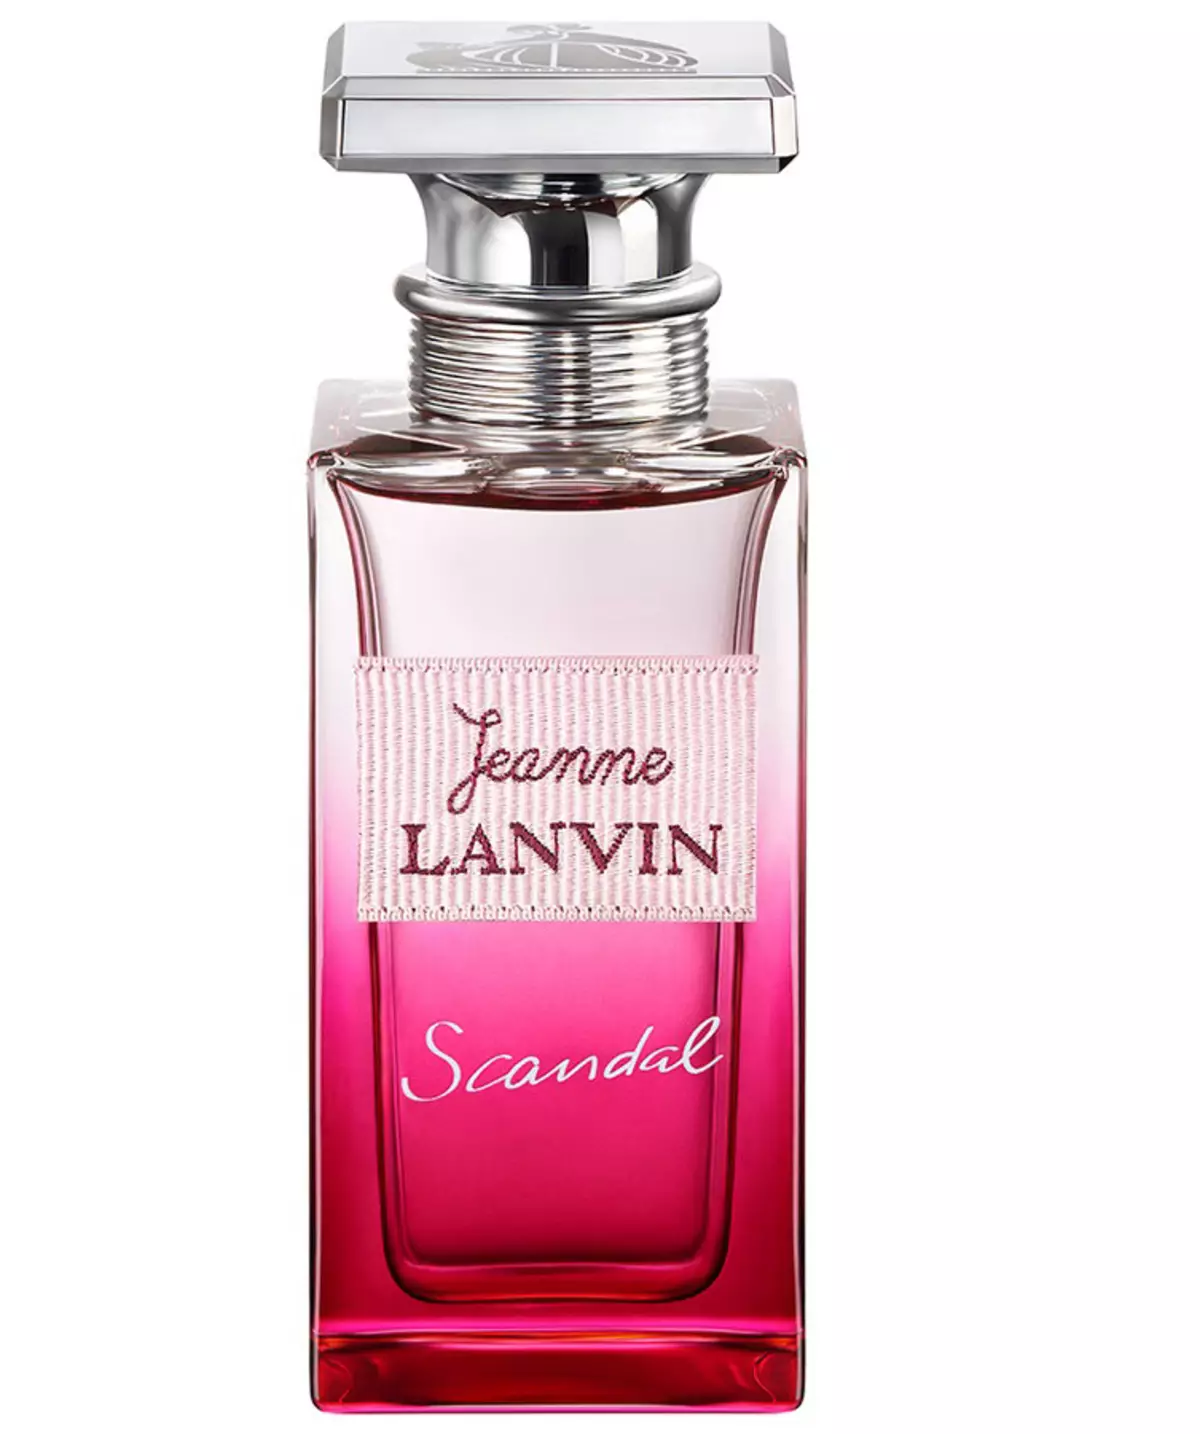 Lanvin parfémy (50 fotek): ženský parfém eclat d'arpege, moderní princezna eau sensuelle a dívka v capri, jeanne skandál a další příchutě 25158_21